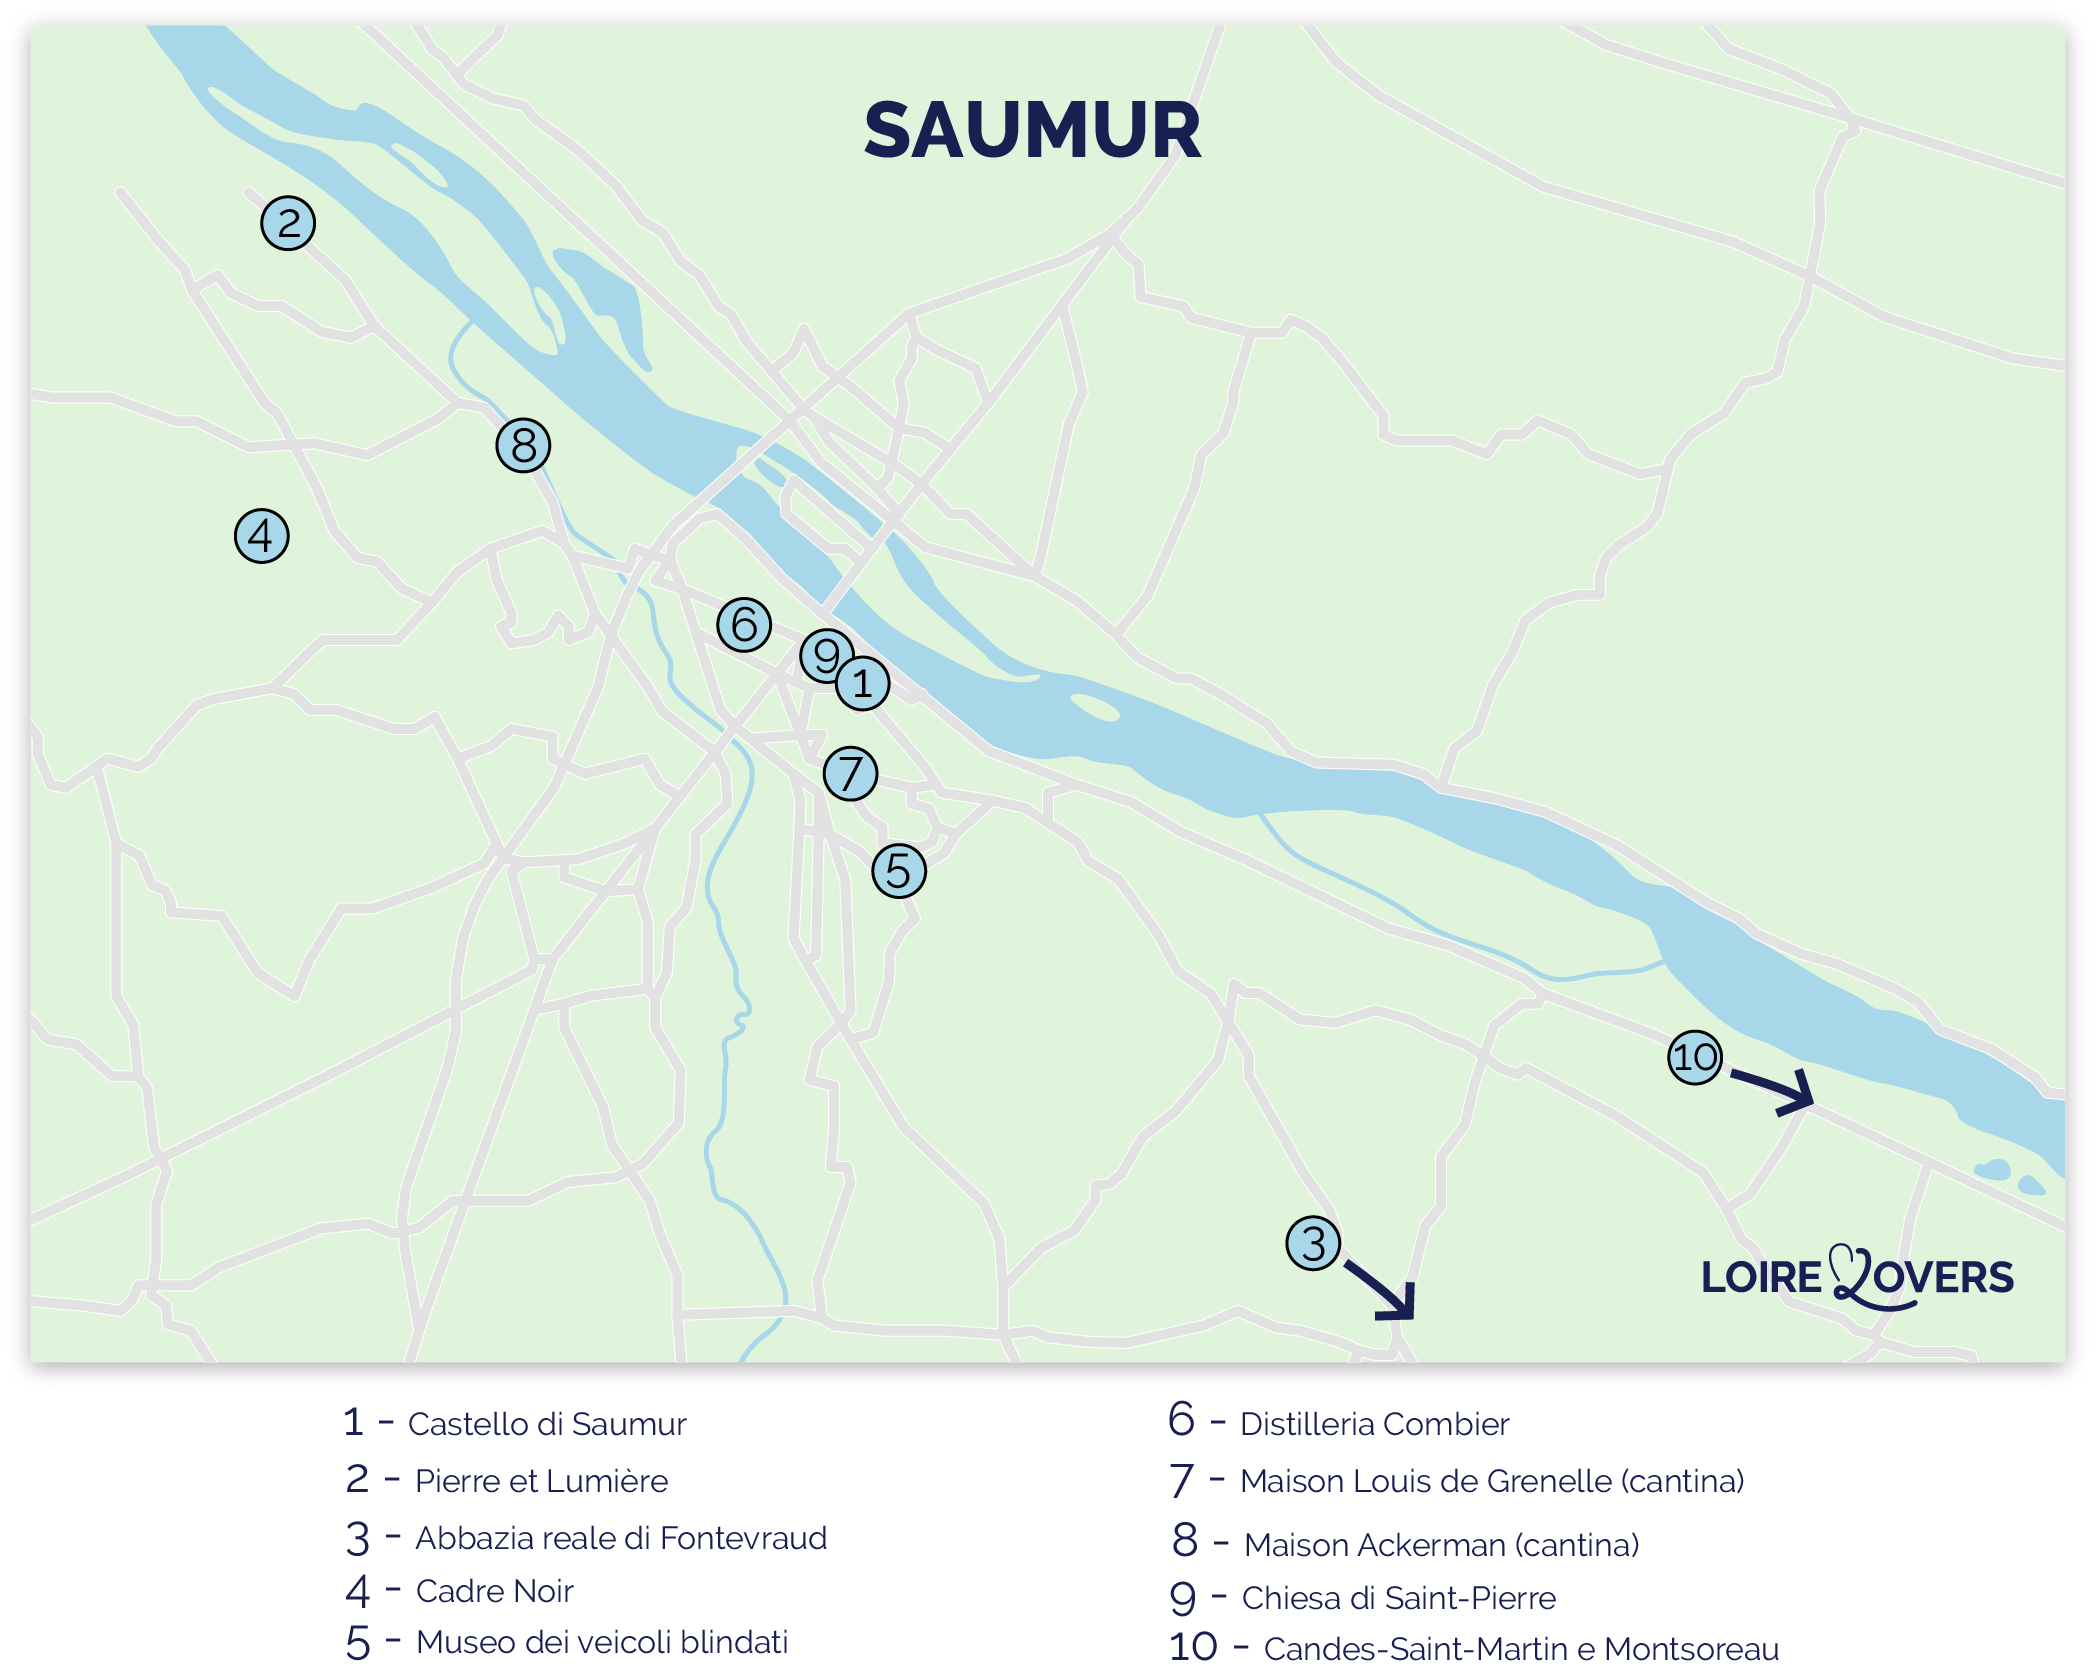 Mappa delle attrazioni turistiche imperdibili di Saumur e dintorni.